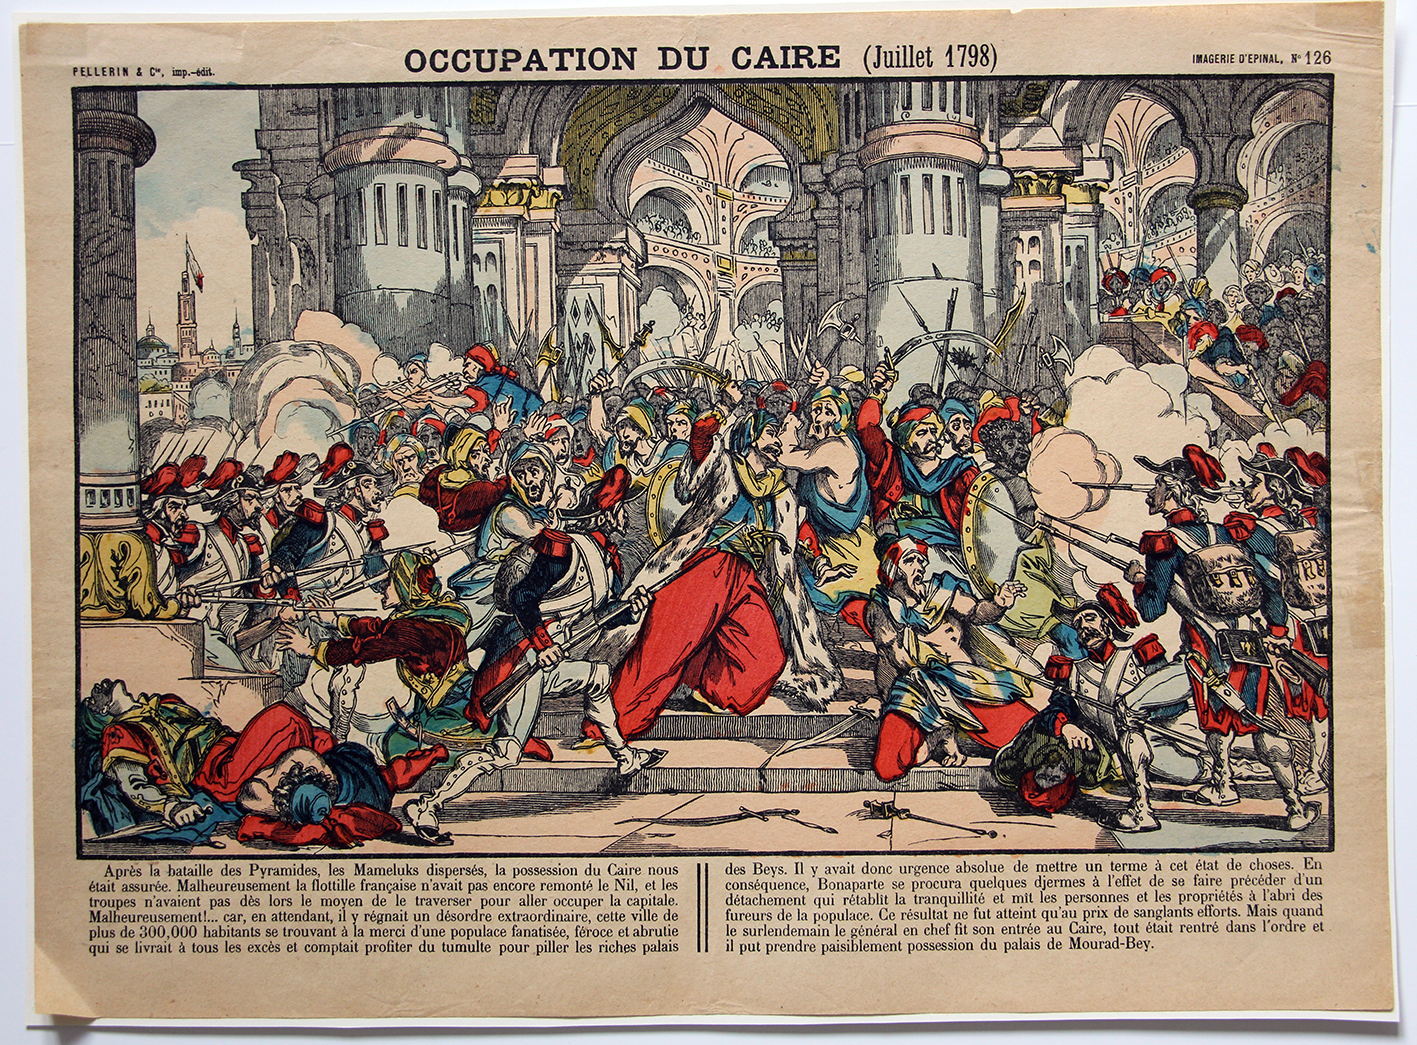 Planche imagerie Epinal - Occupation du Caire - Imagerie Populaire - Juillet 1798 - Planche N°126 - Bonaparte - Kleber